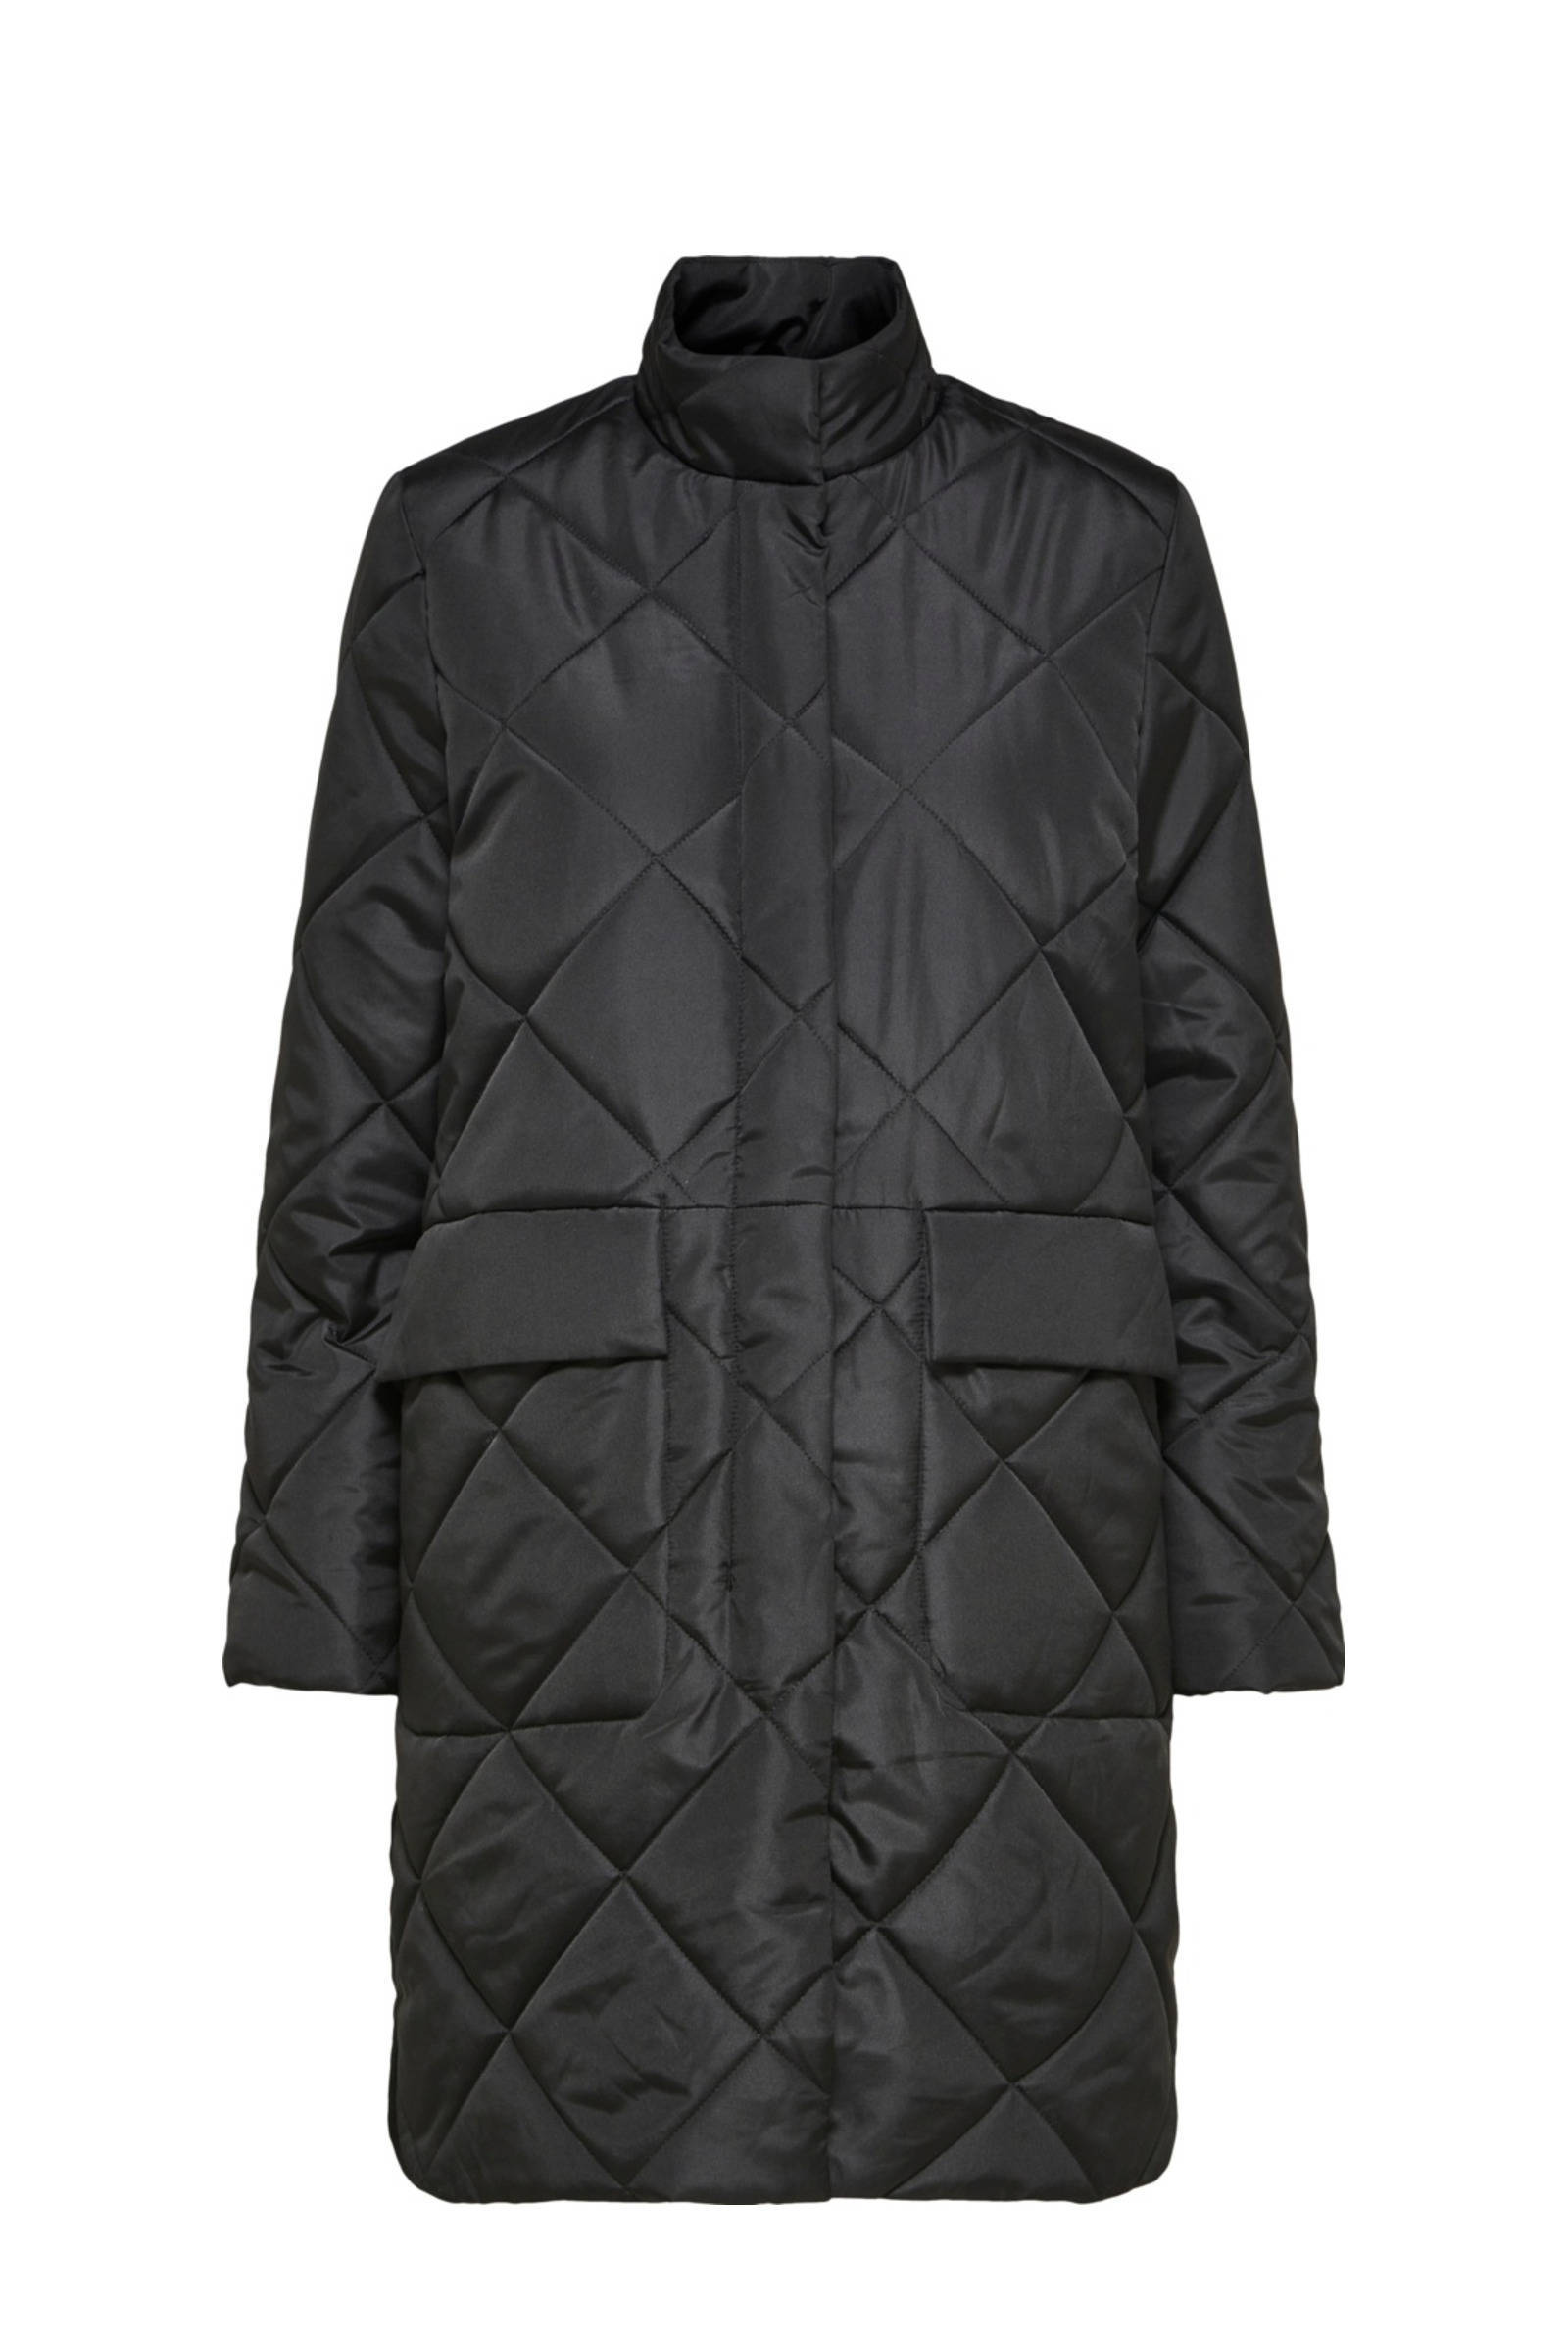 SELECTED FEMME quilted gewatteerde winterjas SLFNADDY van gerecycled polyester zwart online kopen